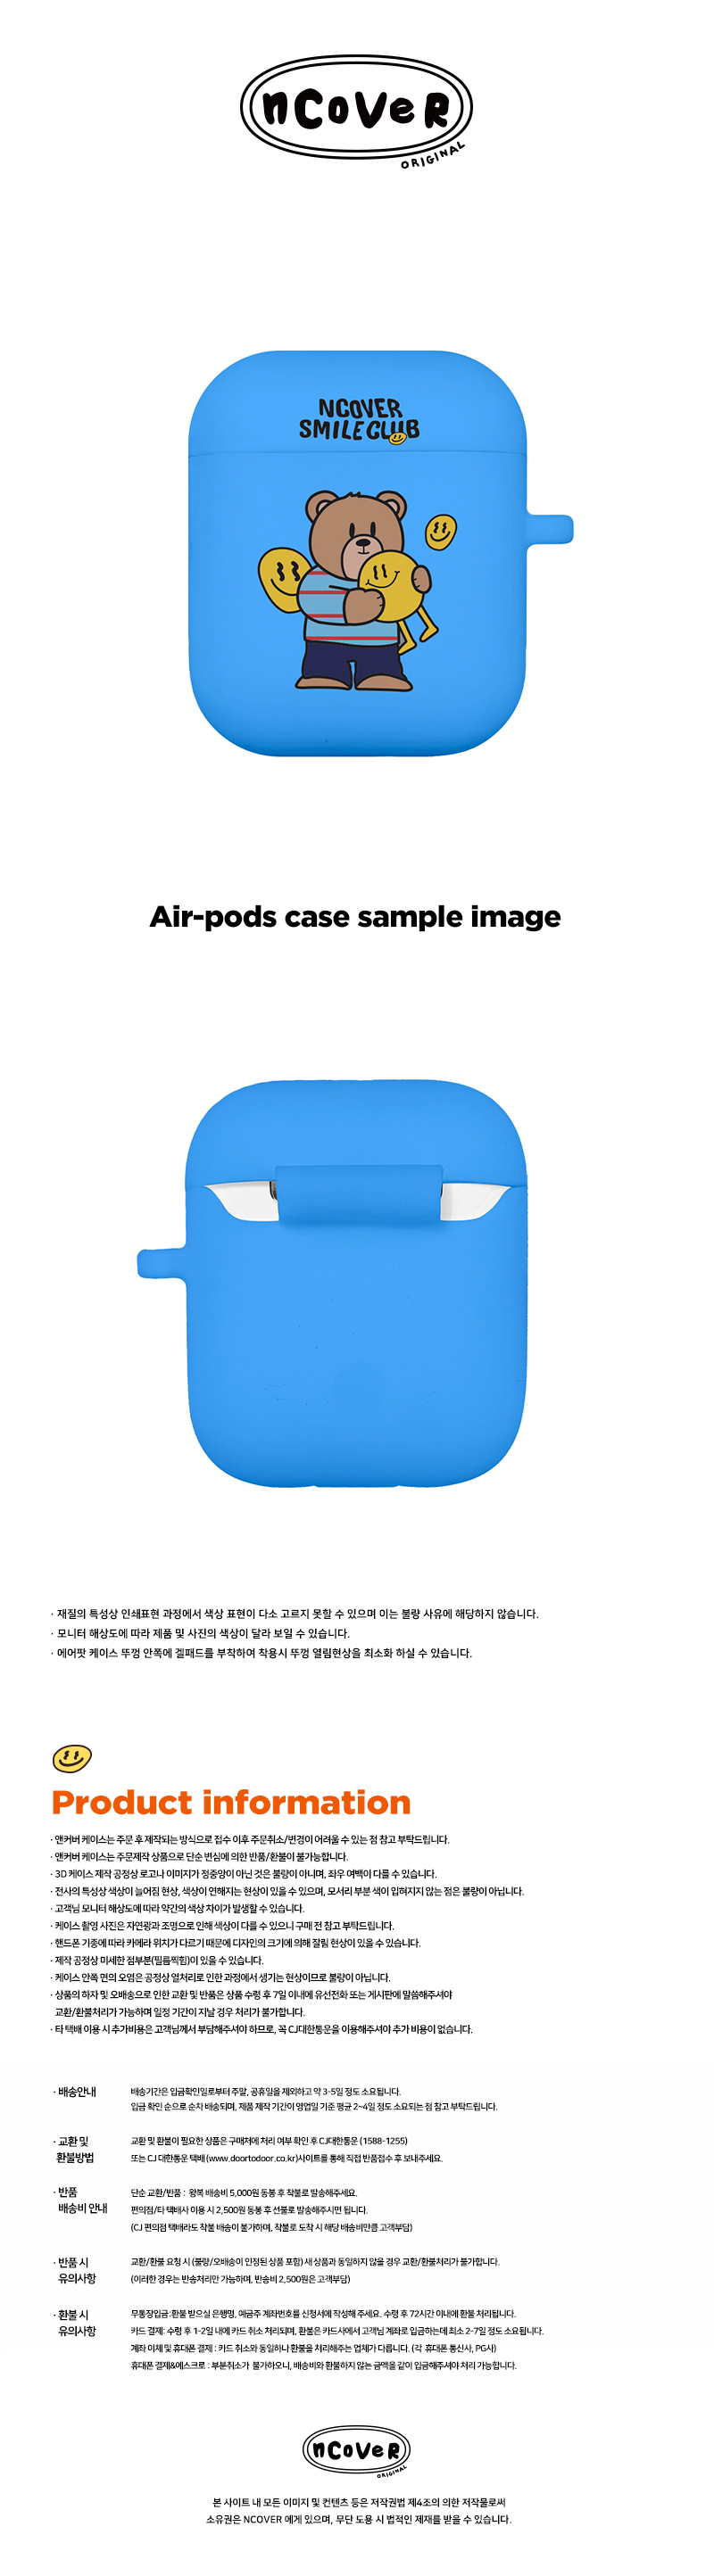 [호환용] Smile ball bruin-blue(airpods jelly)  15,000원 - 바이인터내셔널주식회사 디지털, 이어폰/헤드폰, 이어폰/헤드폰 액세서리, 에어팟/에어팟프로 케이스 바보사랑 [호환용] Smile ball bruin-blue(airpods jelly)  15,000원 - 바이인터내셔널주식회사 디지털, 이어폰/헤드폰, 이어폰/헤드폰 액세서리, 에어팟/에어팟프로 케이스 바보사랑